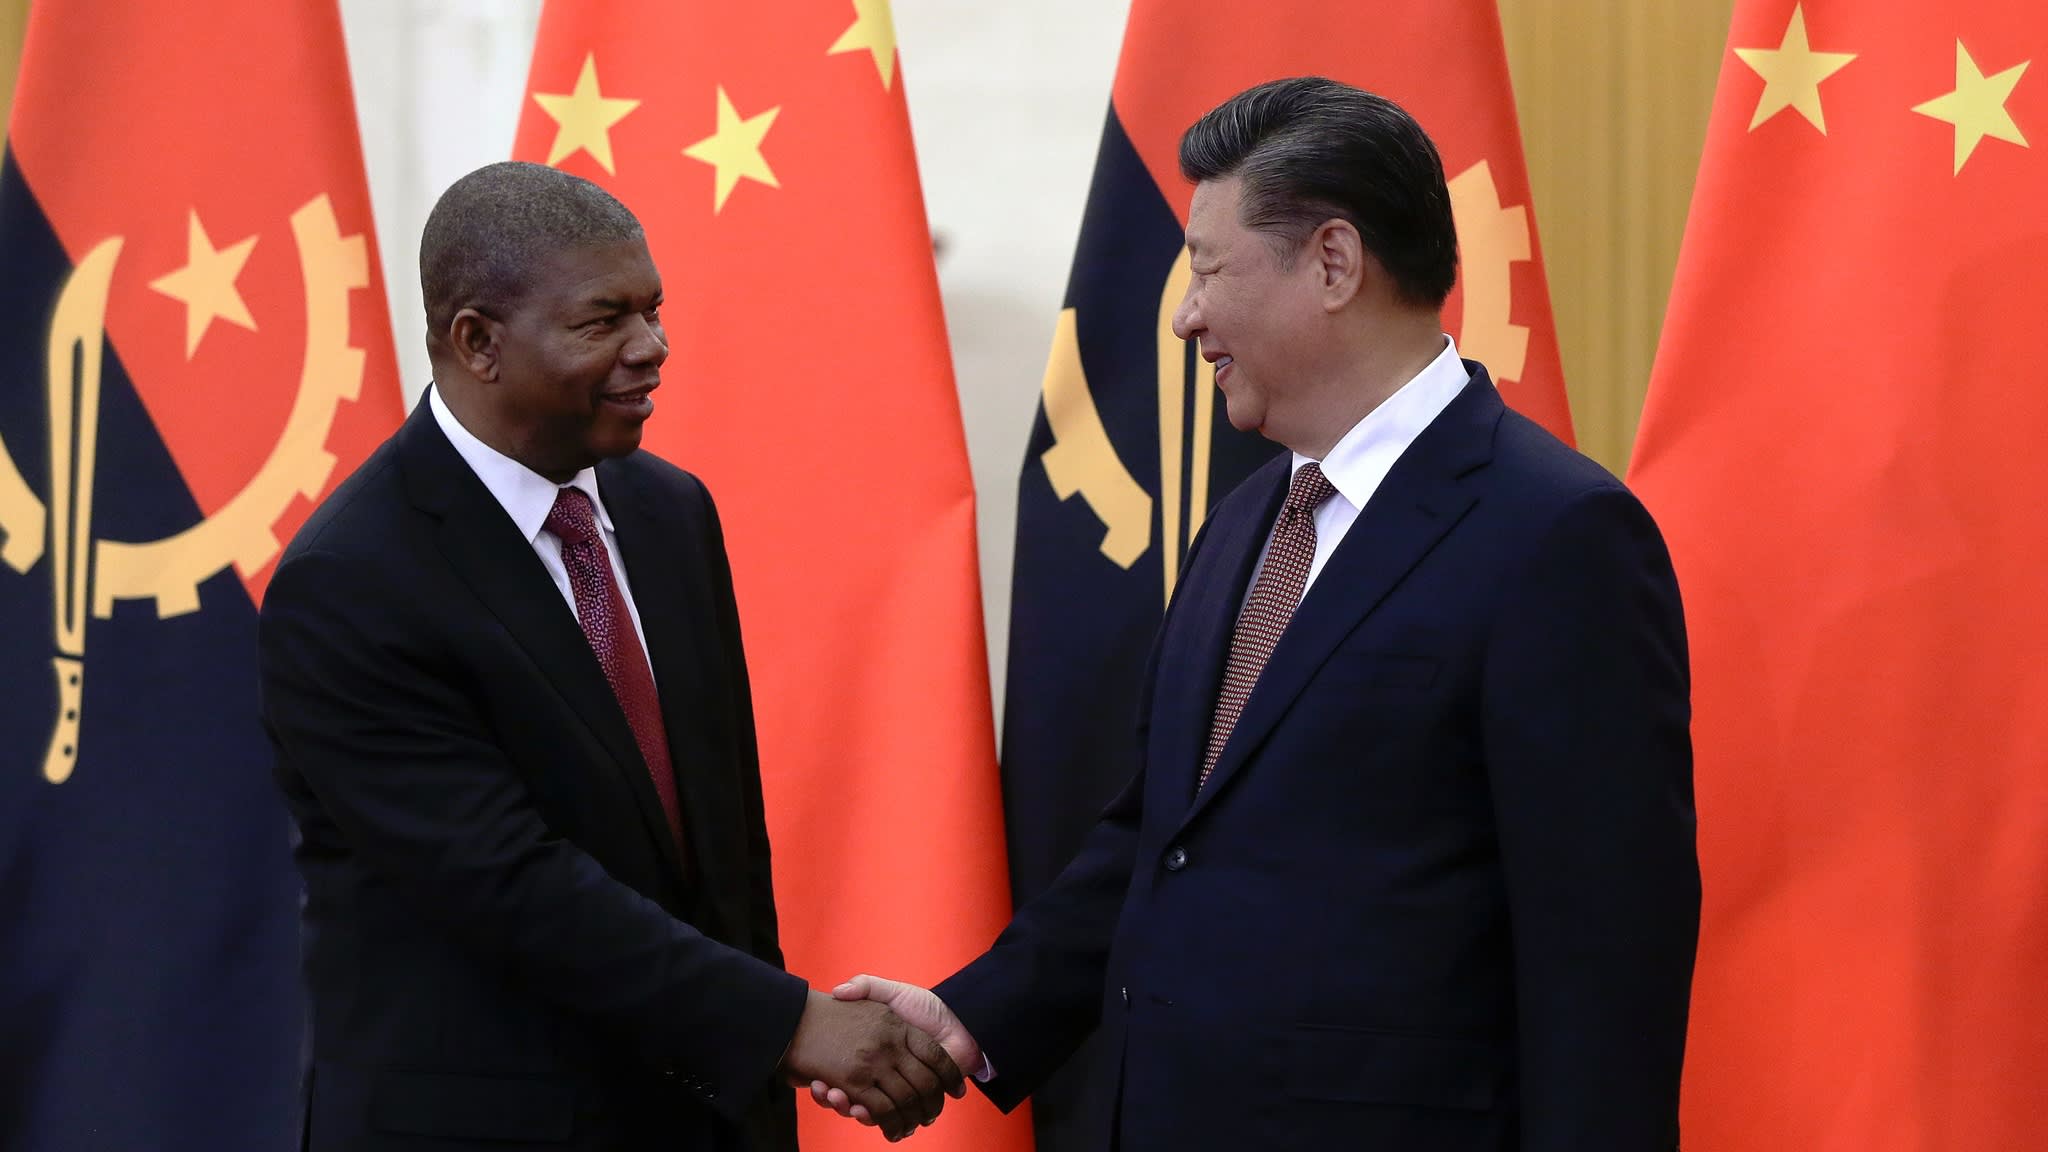 Khoản nợ Angola-Trung Quốc không phải là vấn đề lớn của chính phủ Angola nữa. Thay vào đó, họ đã tích cực đầu tư vào các lĩnh vực kinh tế, giáo dục và y tế, giúp nước này đạt được một sự phát triển đáng kể. Chúng ta hãy cùng xem hình ảnh liên quan đến khoản nợ này để hiểu rõ hơn về tình hình kinh tế của Angola.